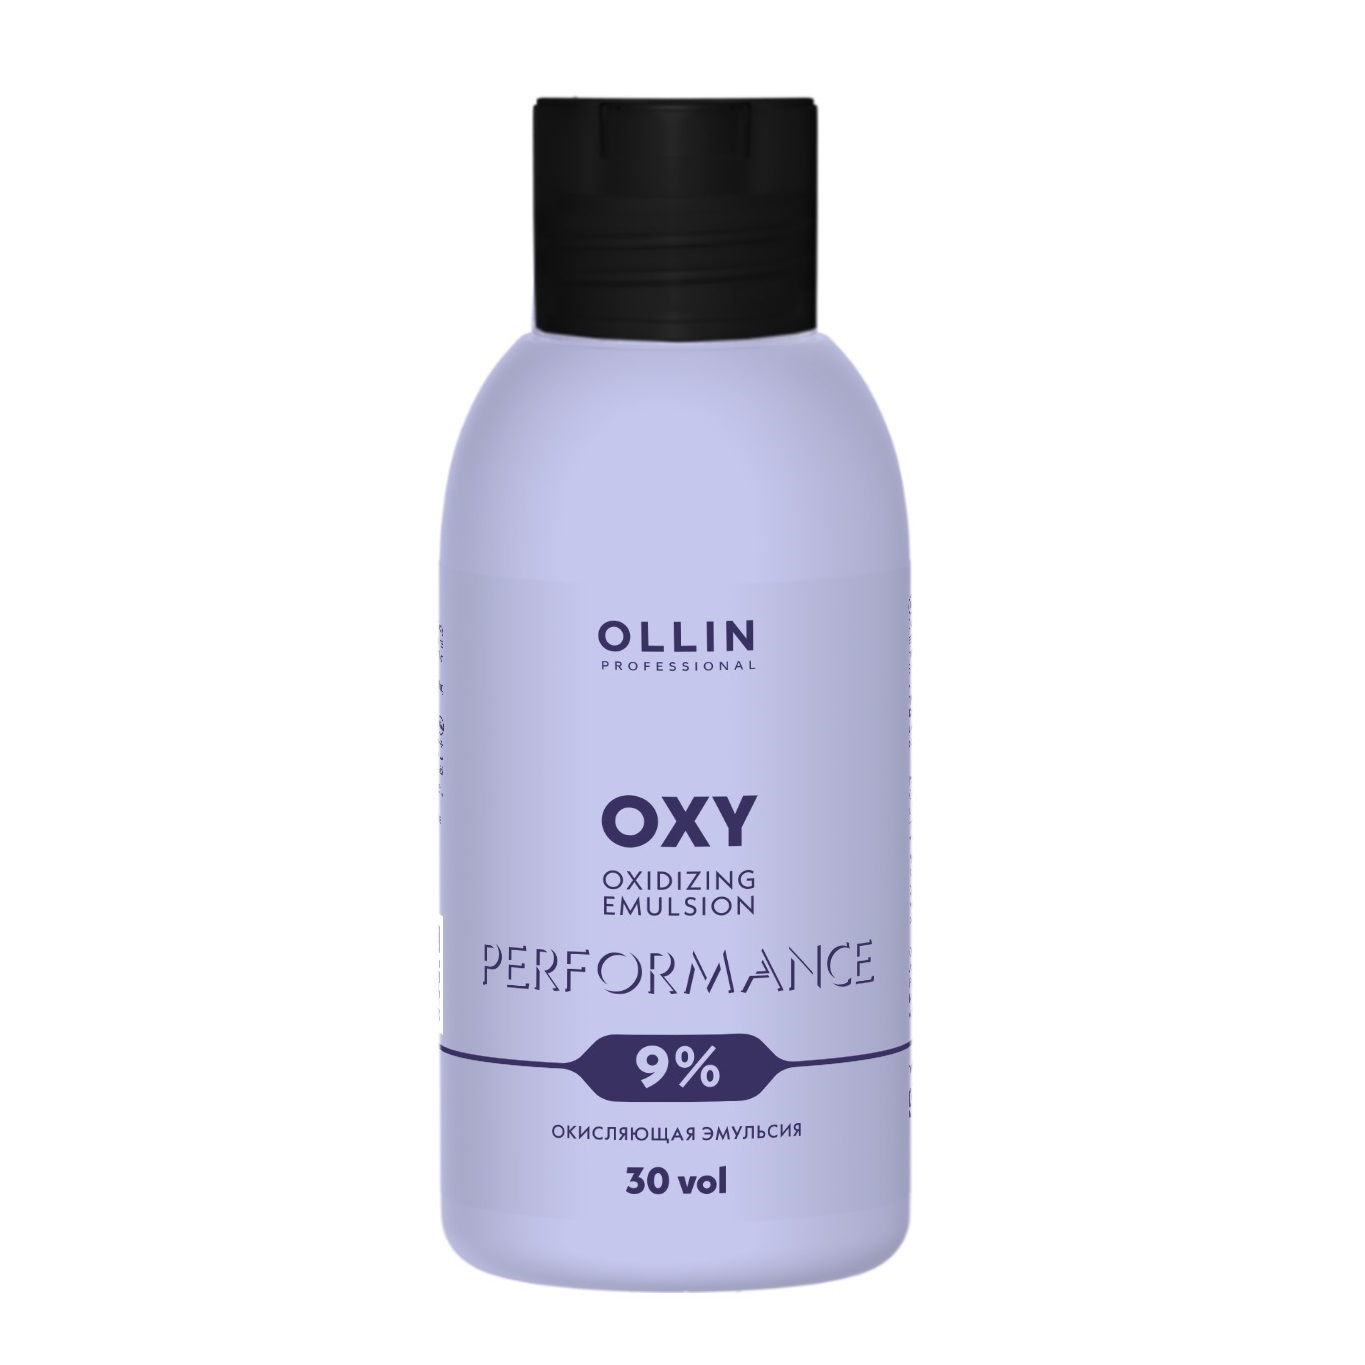 Ollin Professional Окисляющая эмульсия 9% 30 vol, 90 мл (Ollin Professional, Performance) окисляющая эмульсия 1 5% ollin professional performance oxy 90 мл